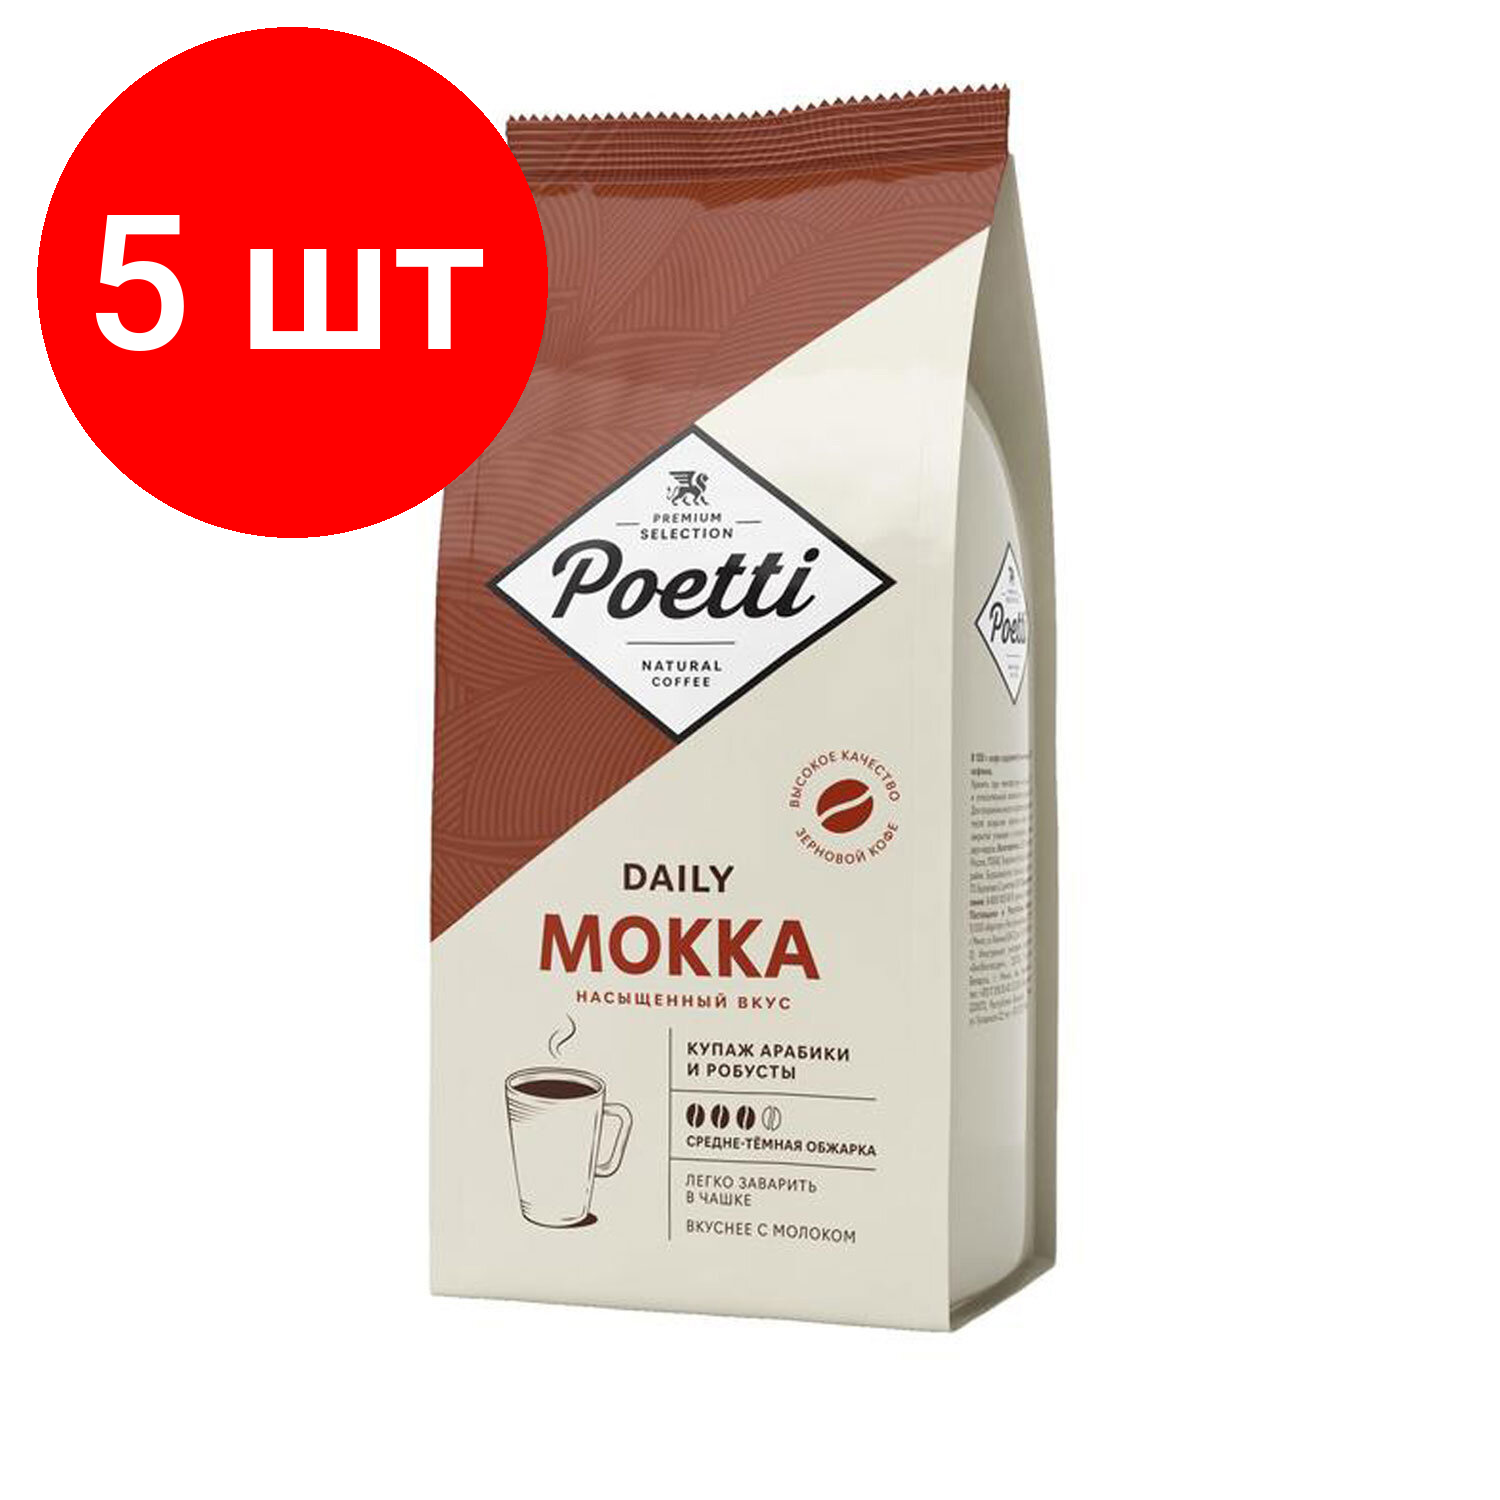 Комплект 5 шт, Кофе в зернах Poetti "Mokka", натуральный, 1000 г, вакуумная упаковка, 18101